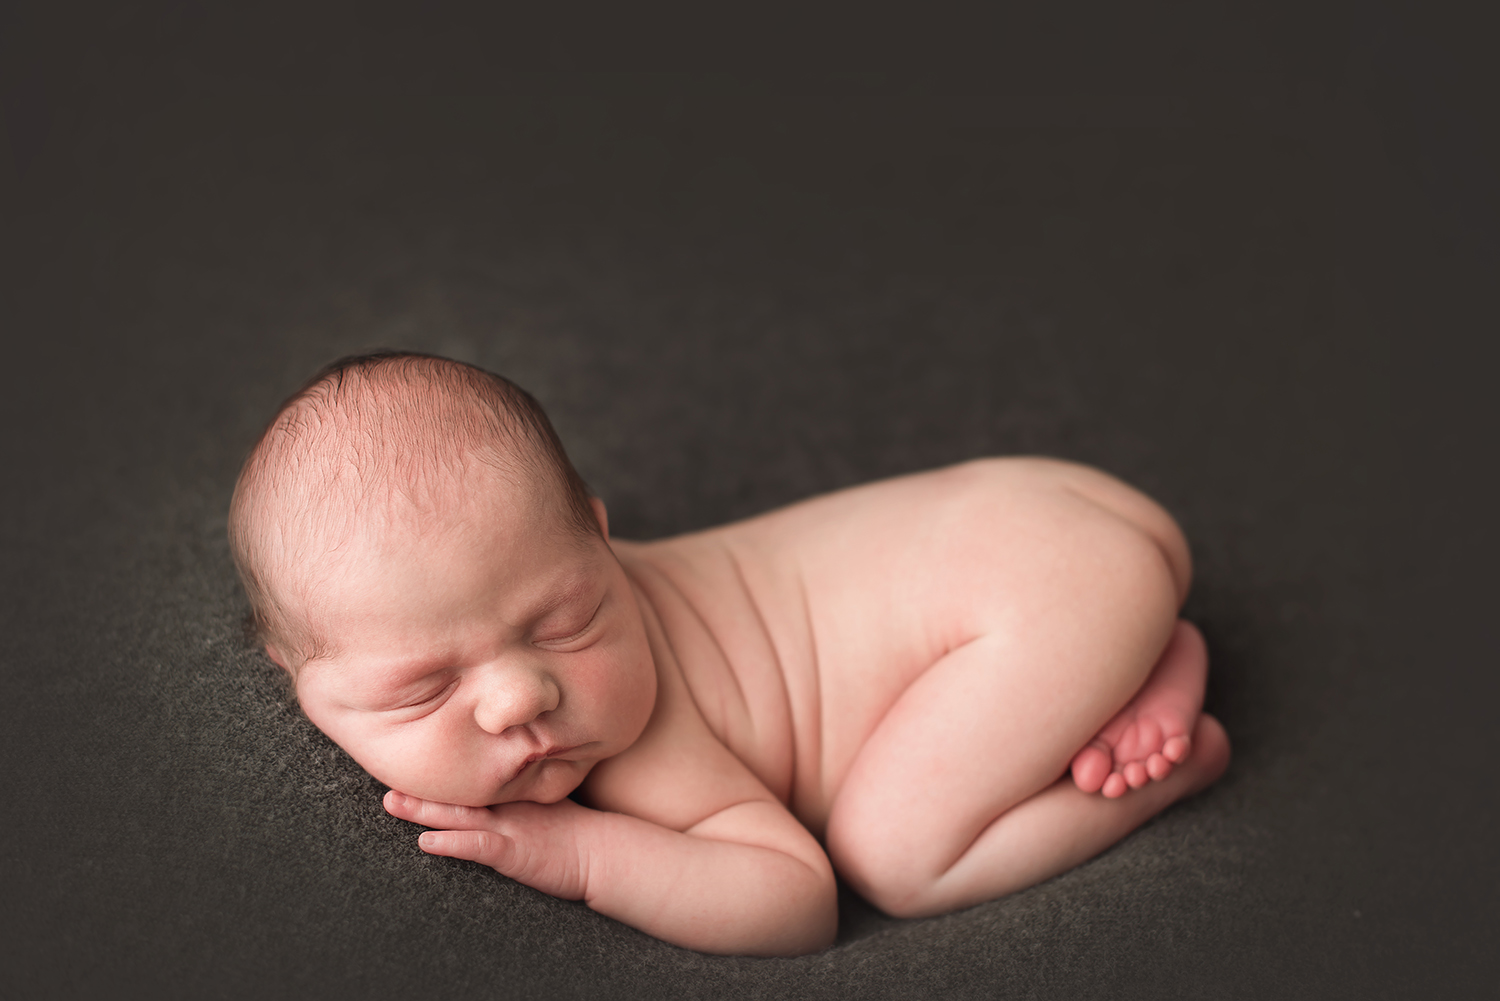 baby-photographer-barebabyphotography.jpg